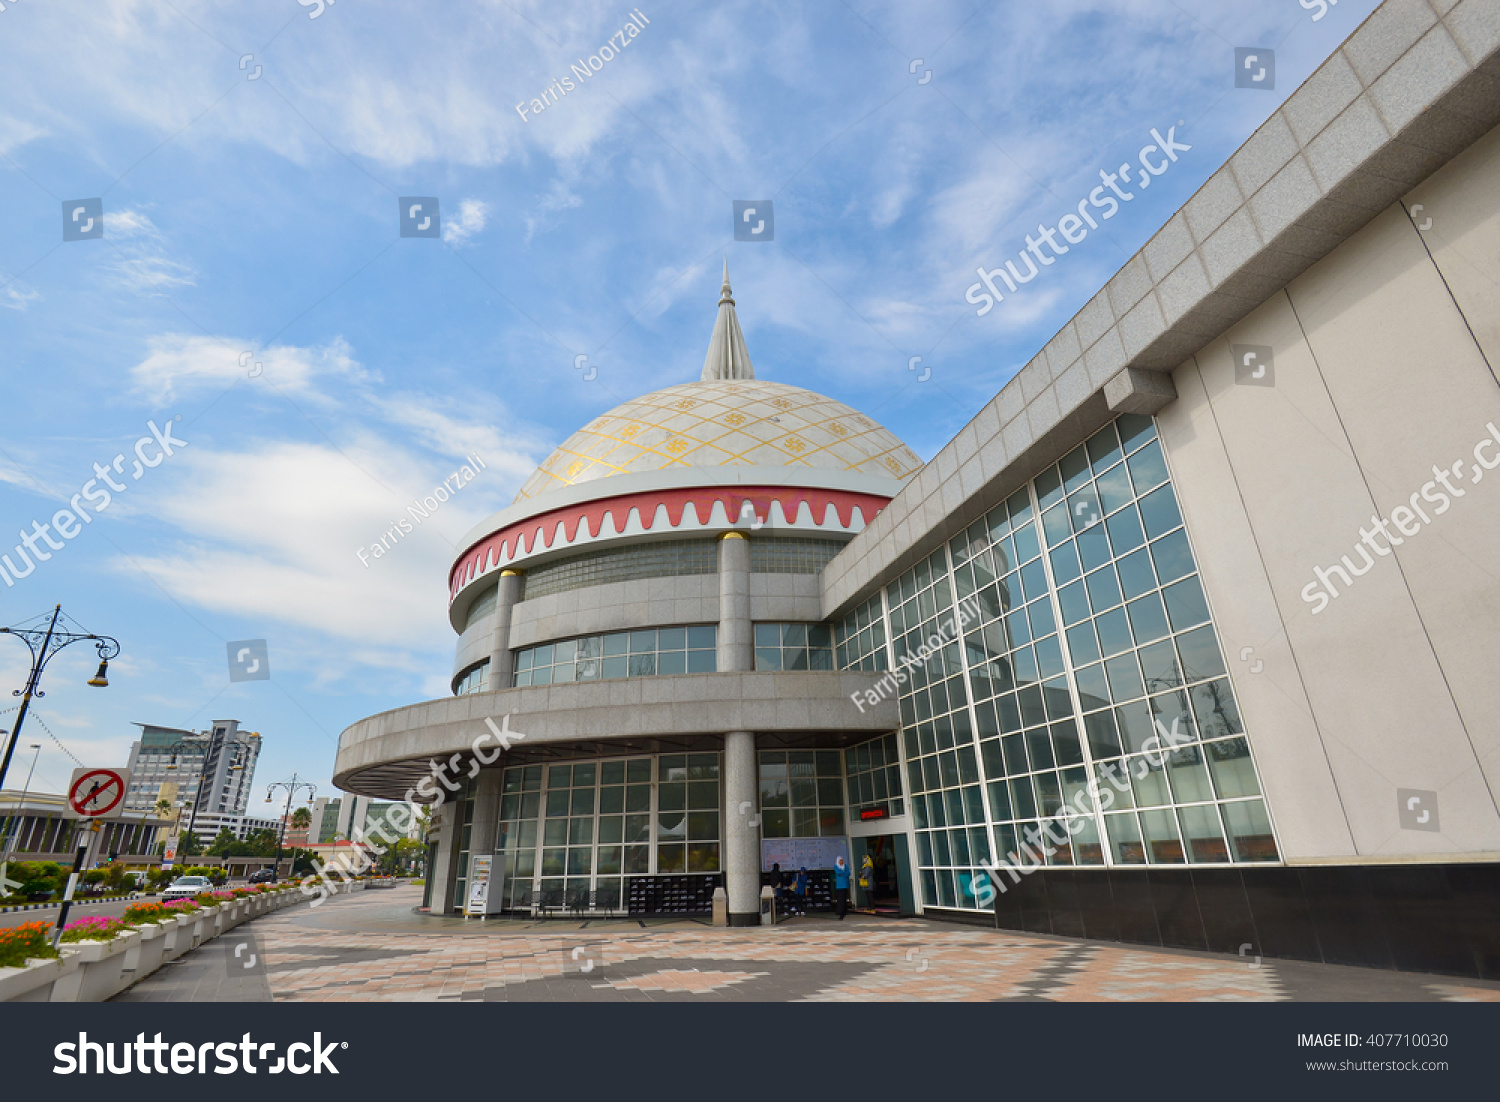 Beautiful view of The Royal Regalia Museum located in Bandar Seri Begawan, Brunei. #407710030